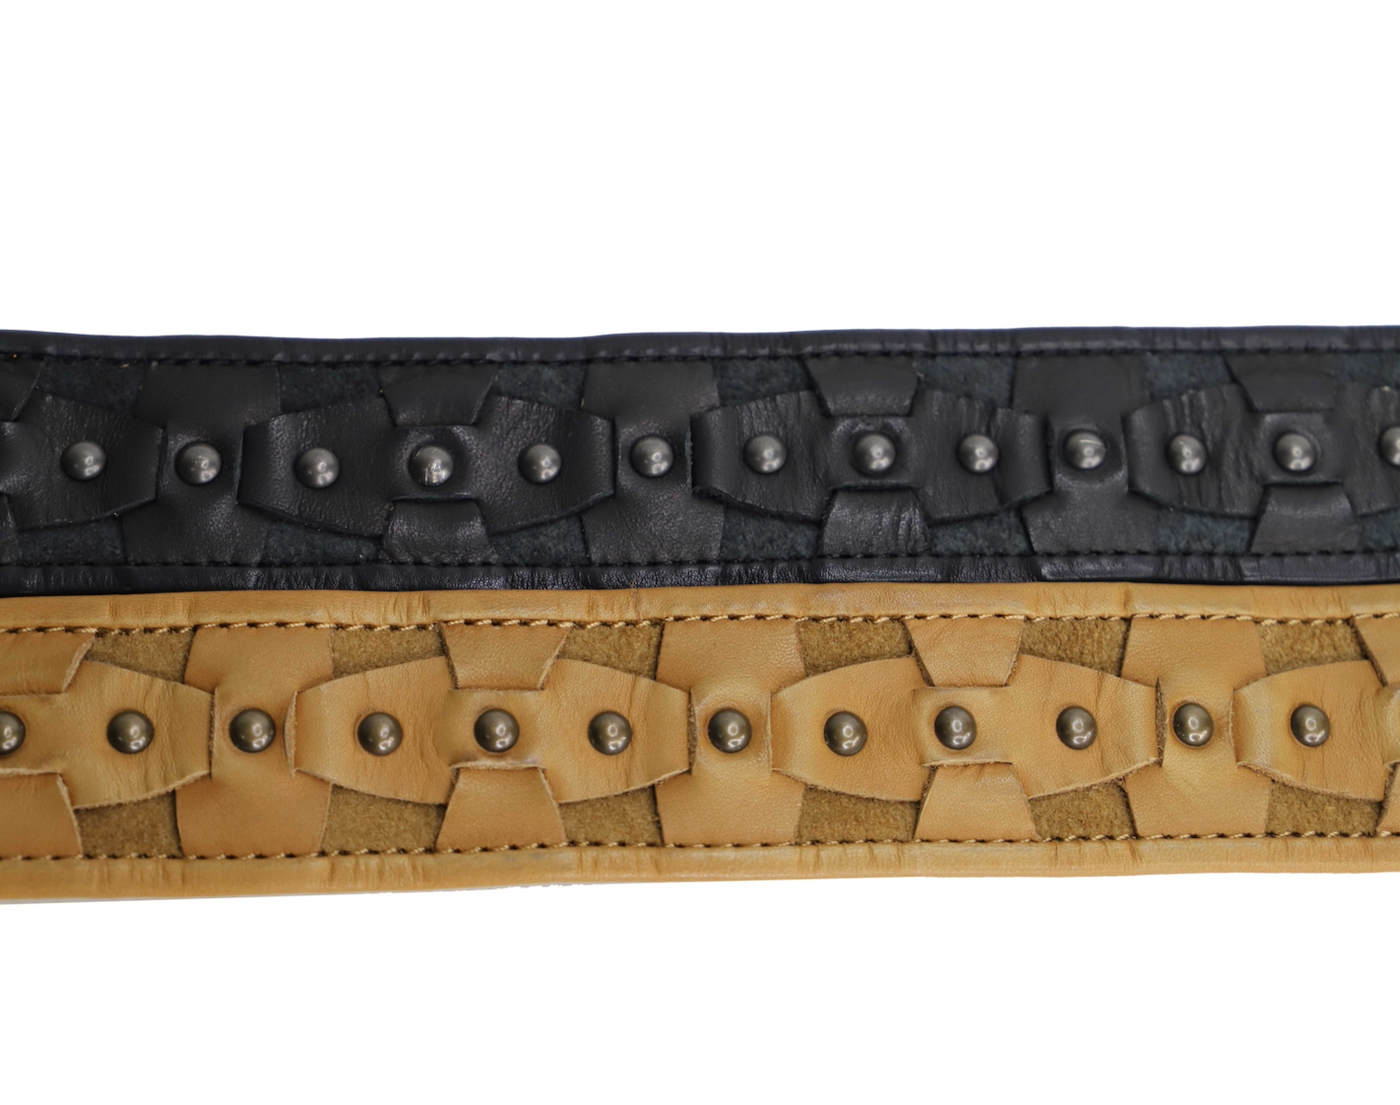 Women's leather belt 